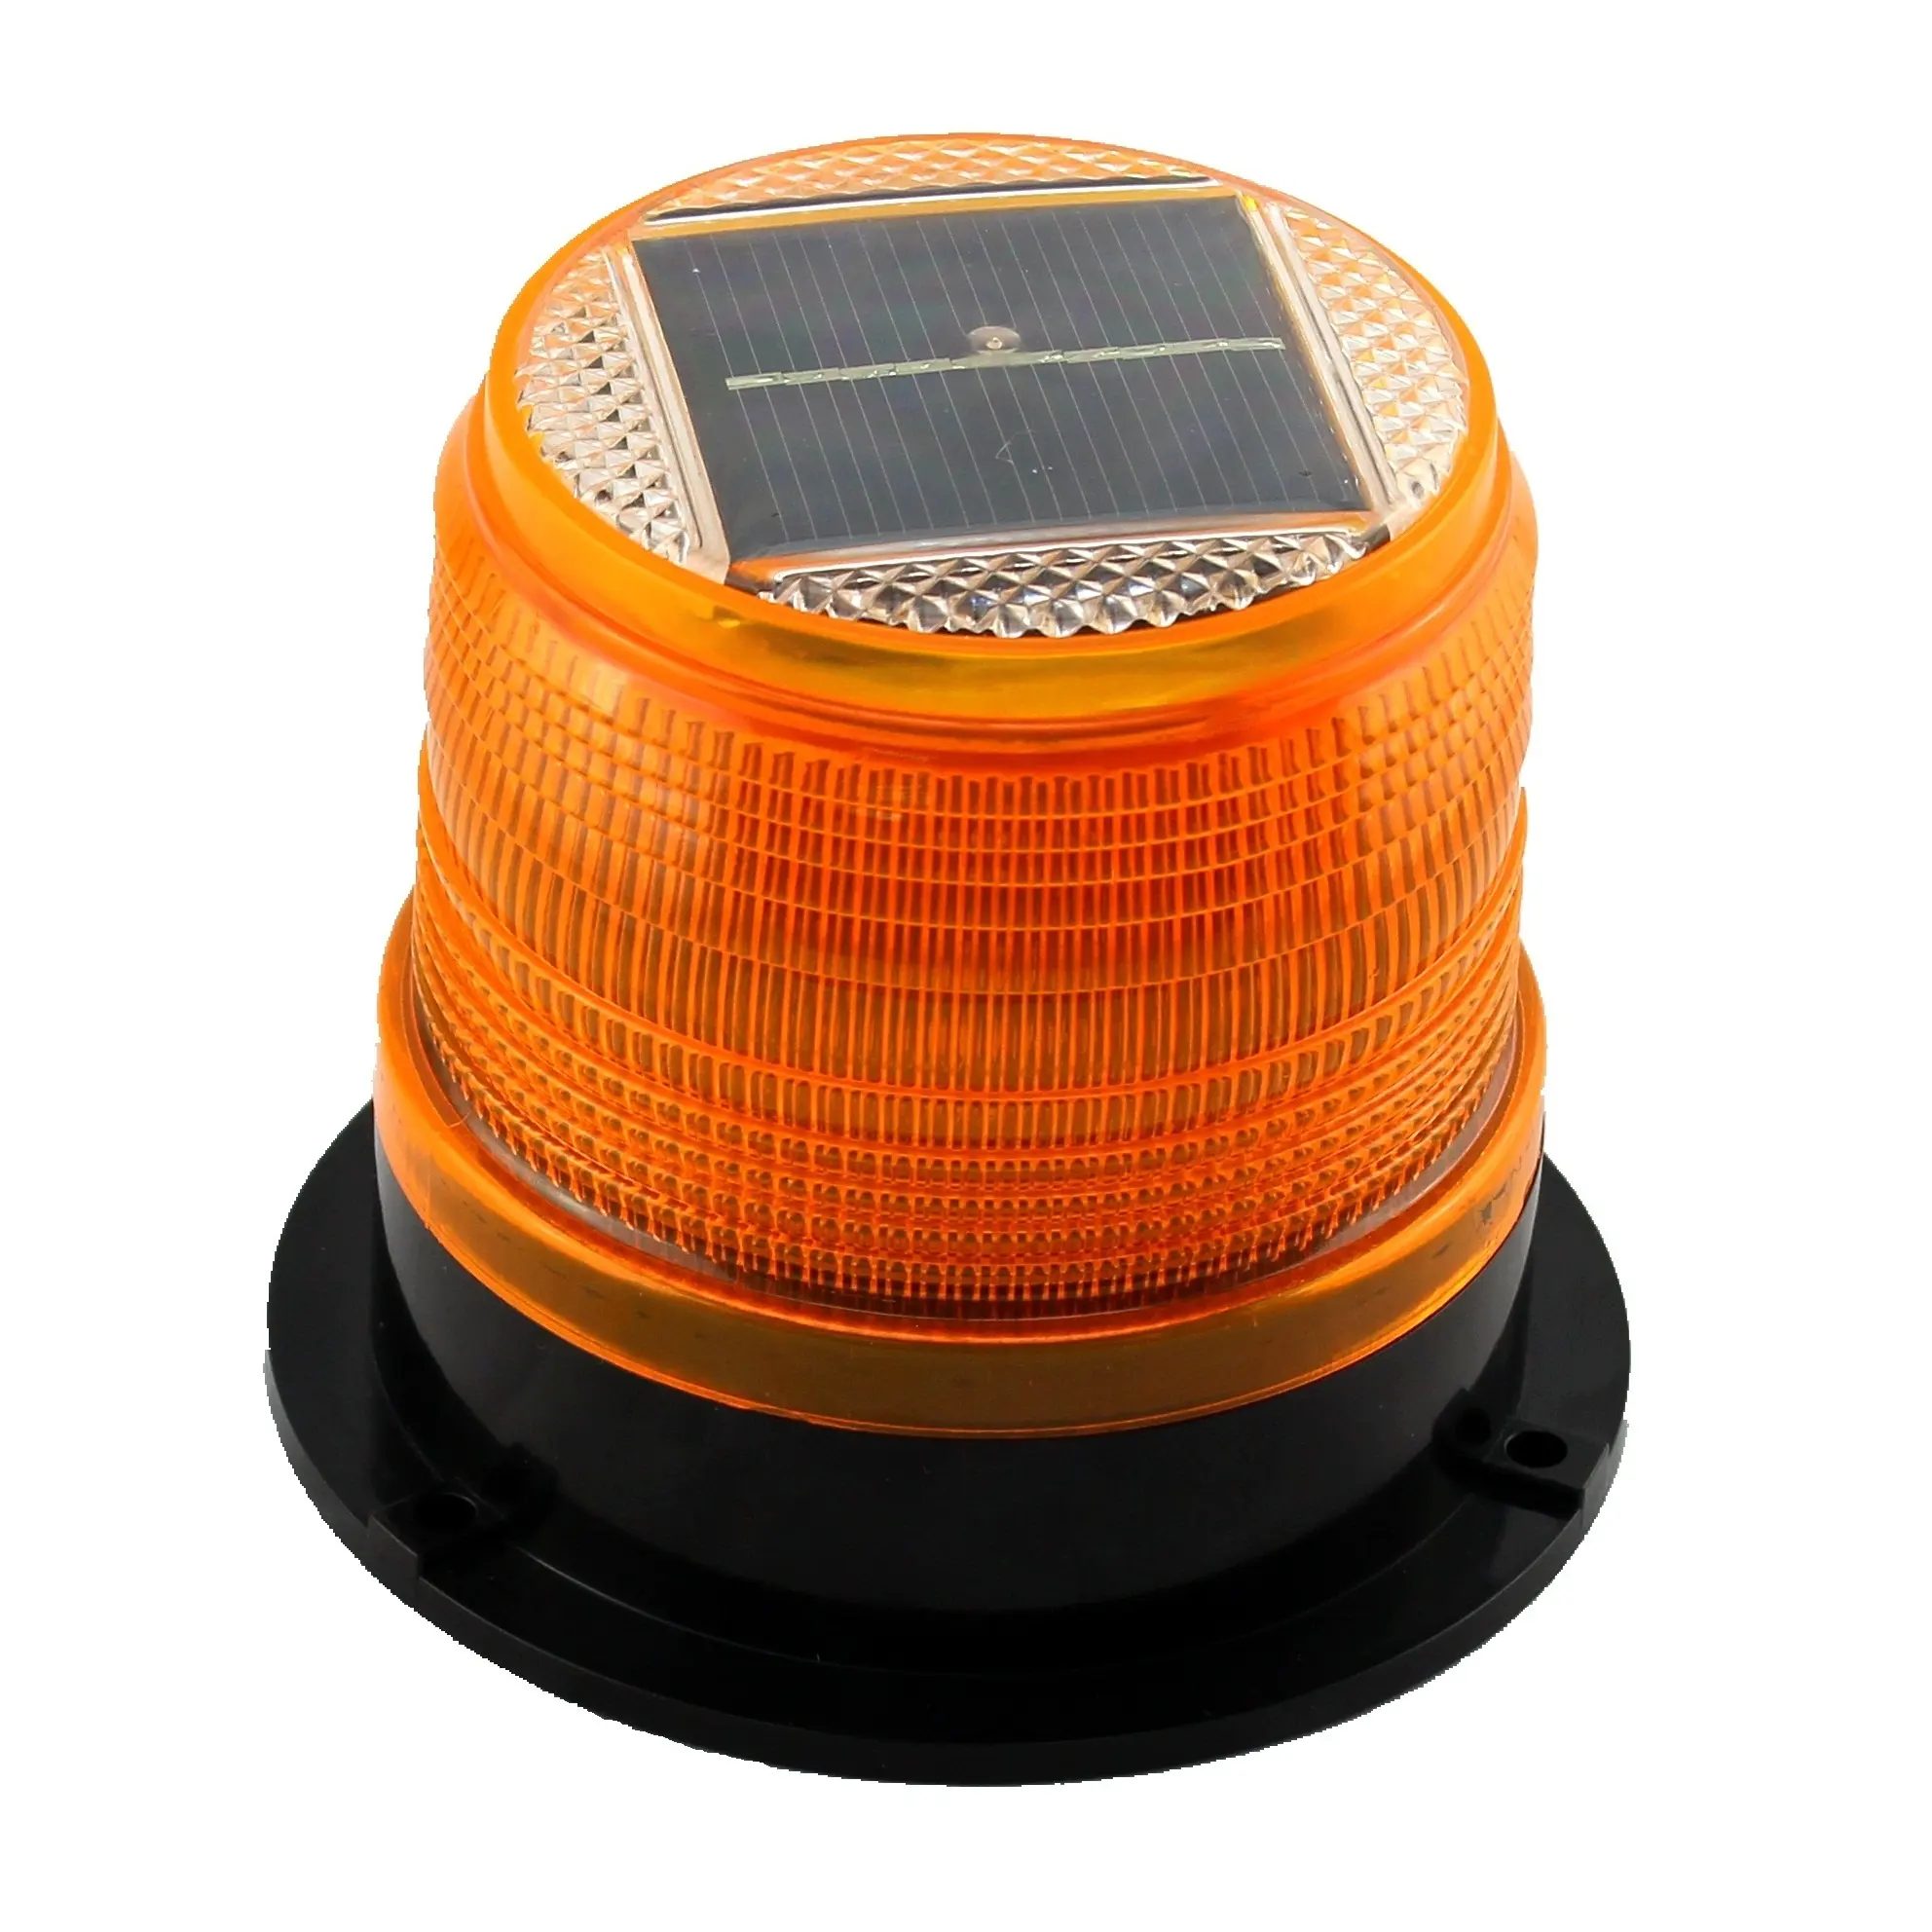 Üst kurşun Amber acil güneş fener LED uyarı ışığı manyetik trafik yanıp sönen Strobe lambası